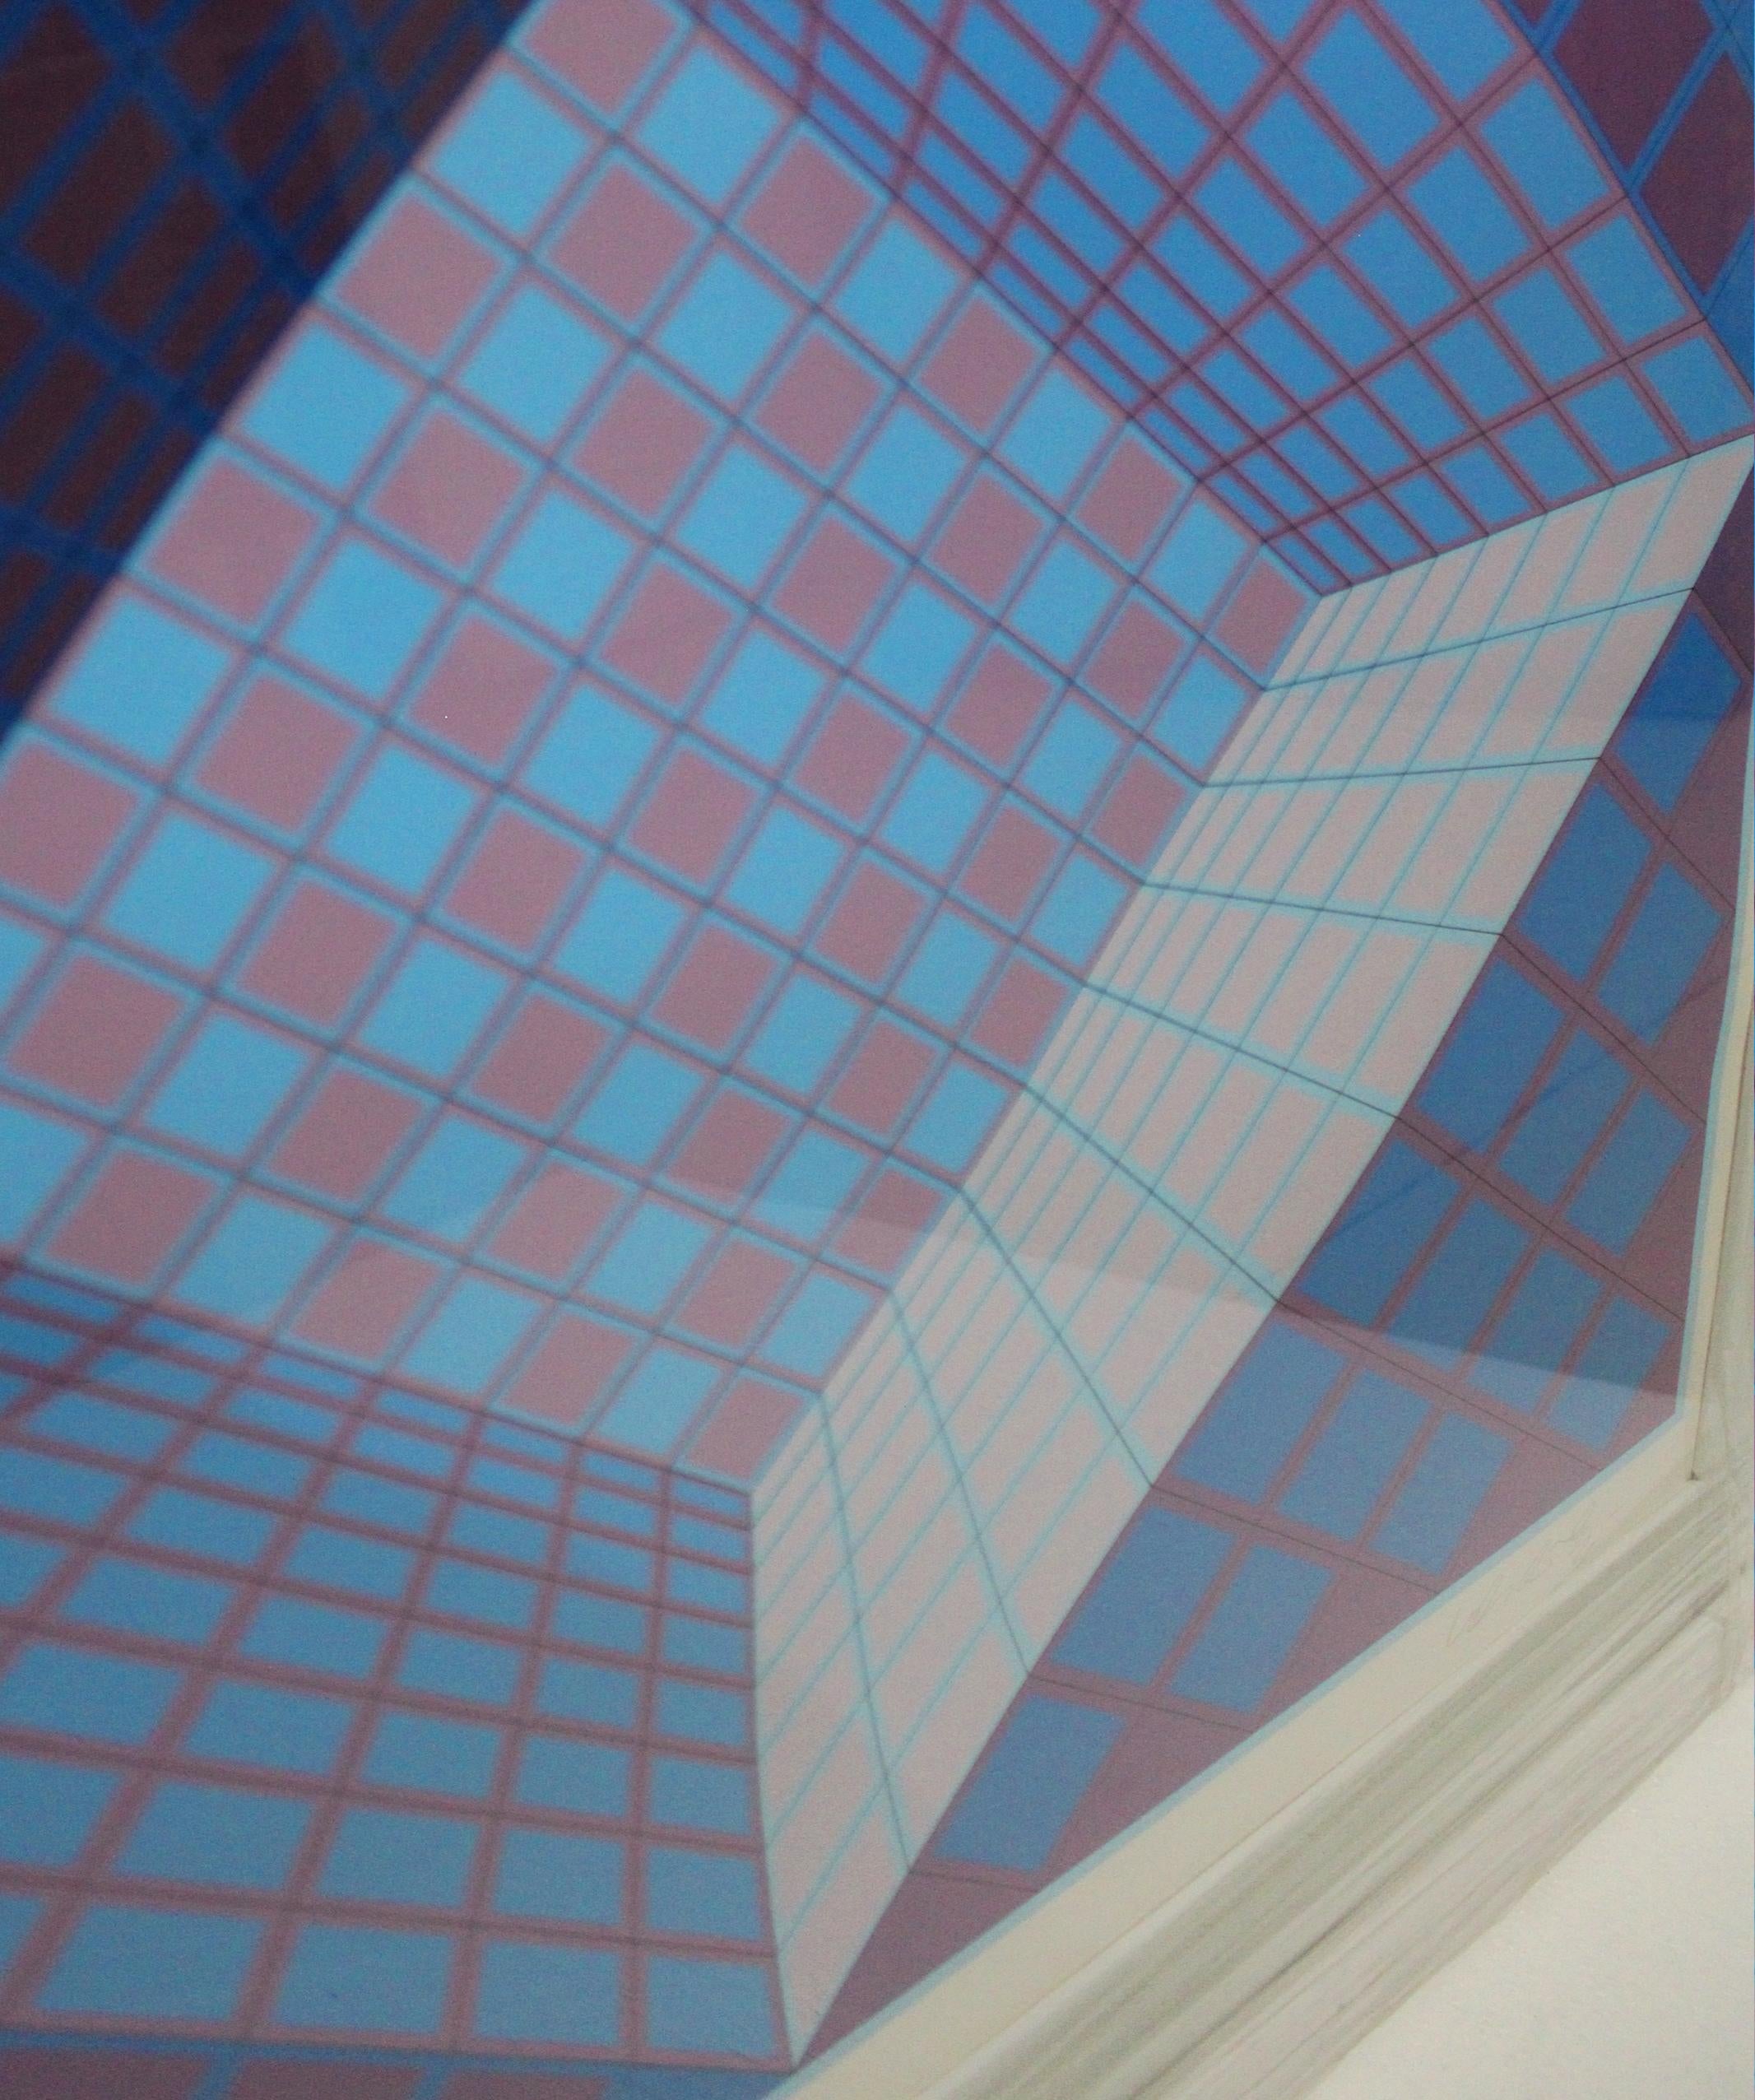 Victor Vasarely
(1906-1997)
Lila und blau geometrisch
Seidensiebdruck auf PapierAuflage: 190/250
Rechts und links unten mit Bleistift signiert und nummeriert: Vasarely
Bild: 25